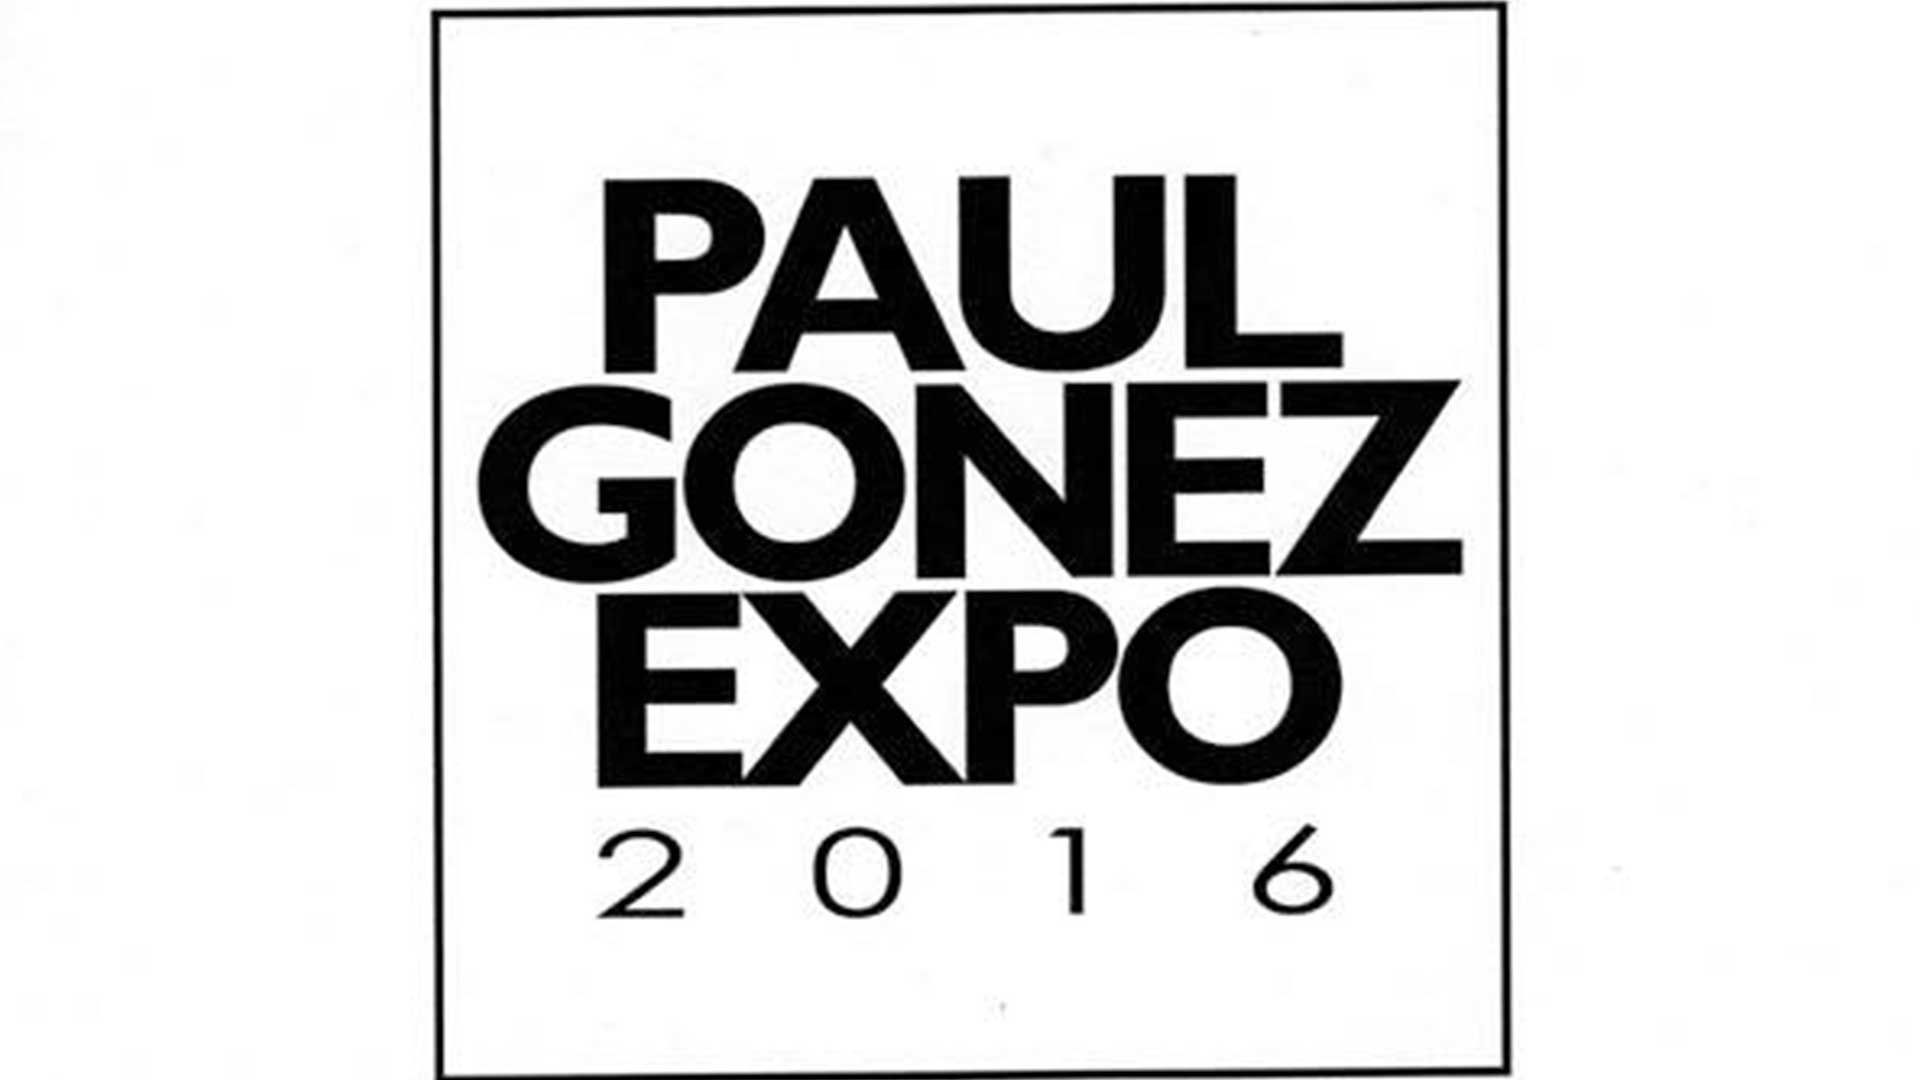 PAUL GONEZ